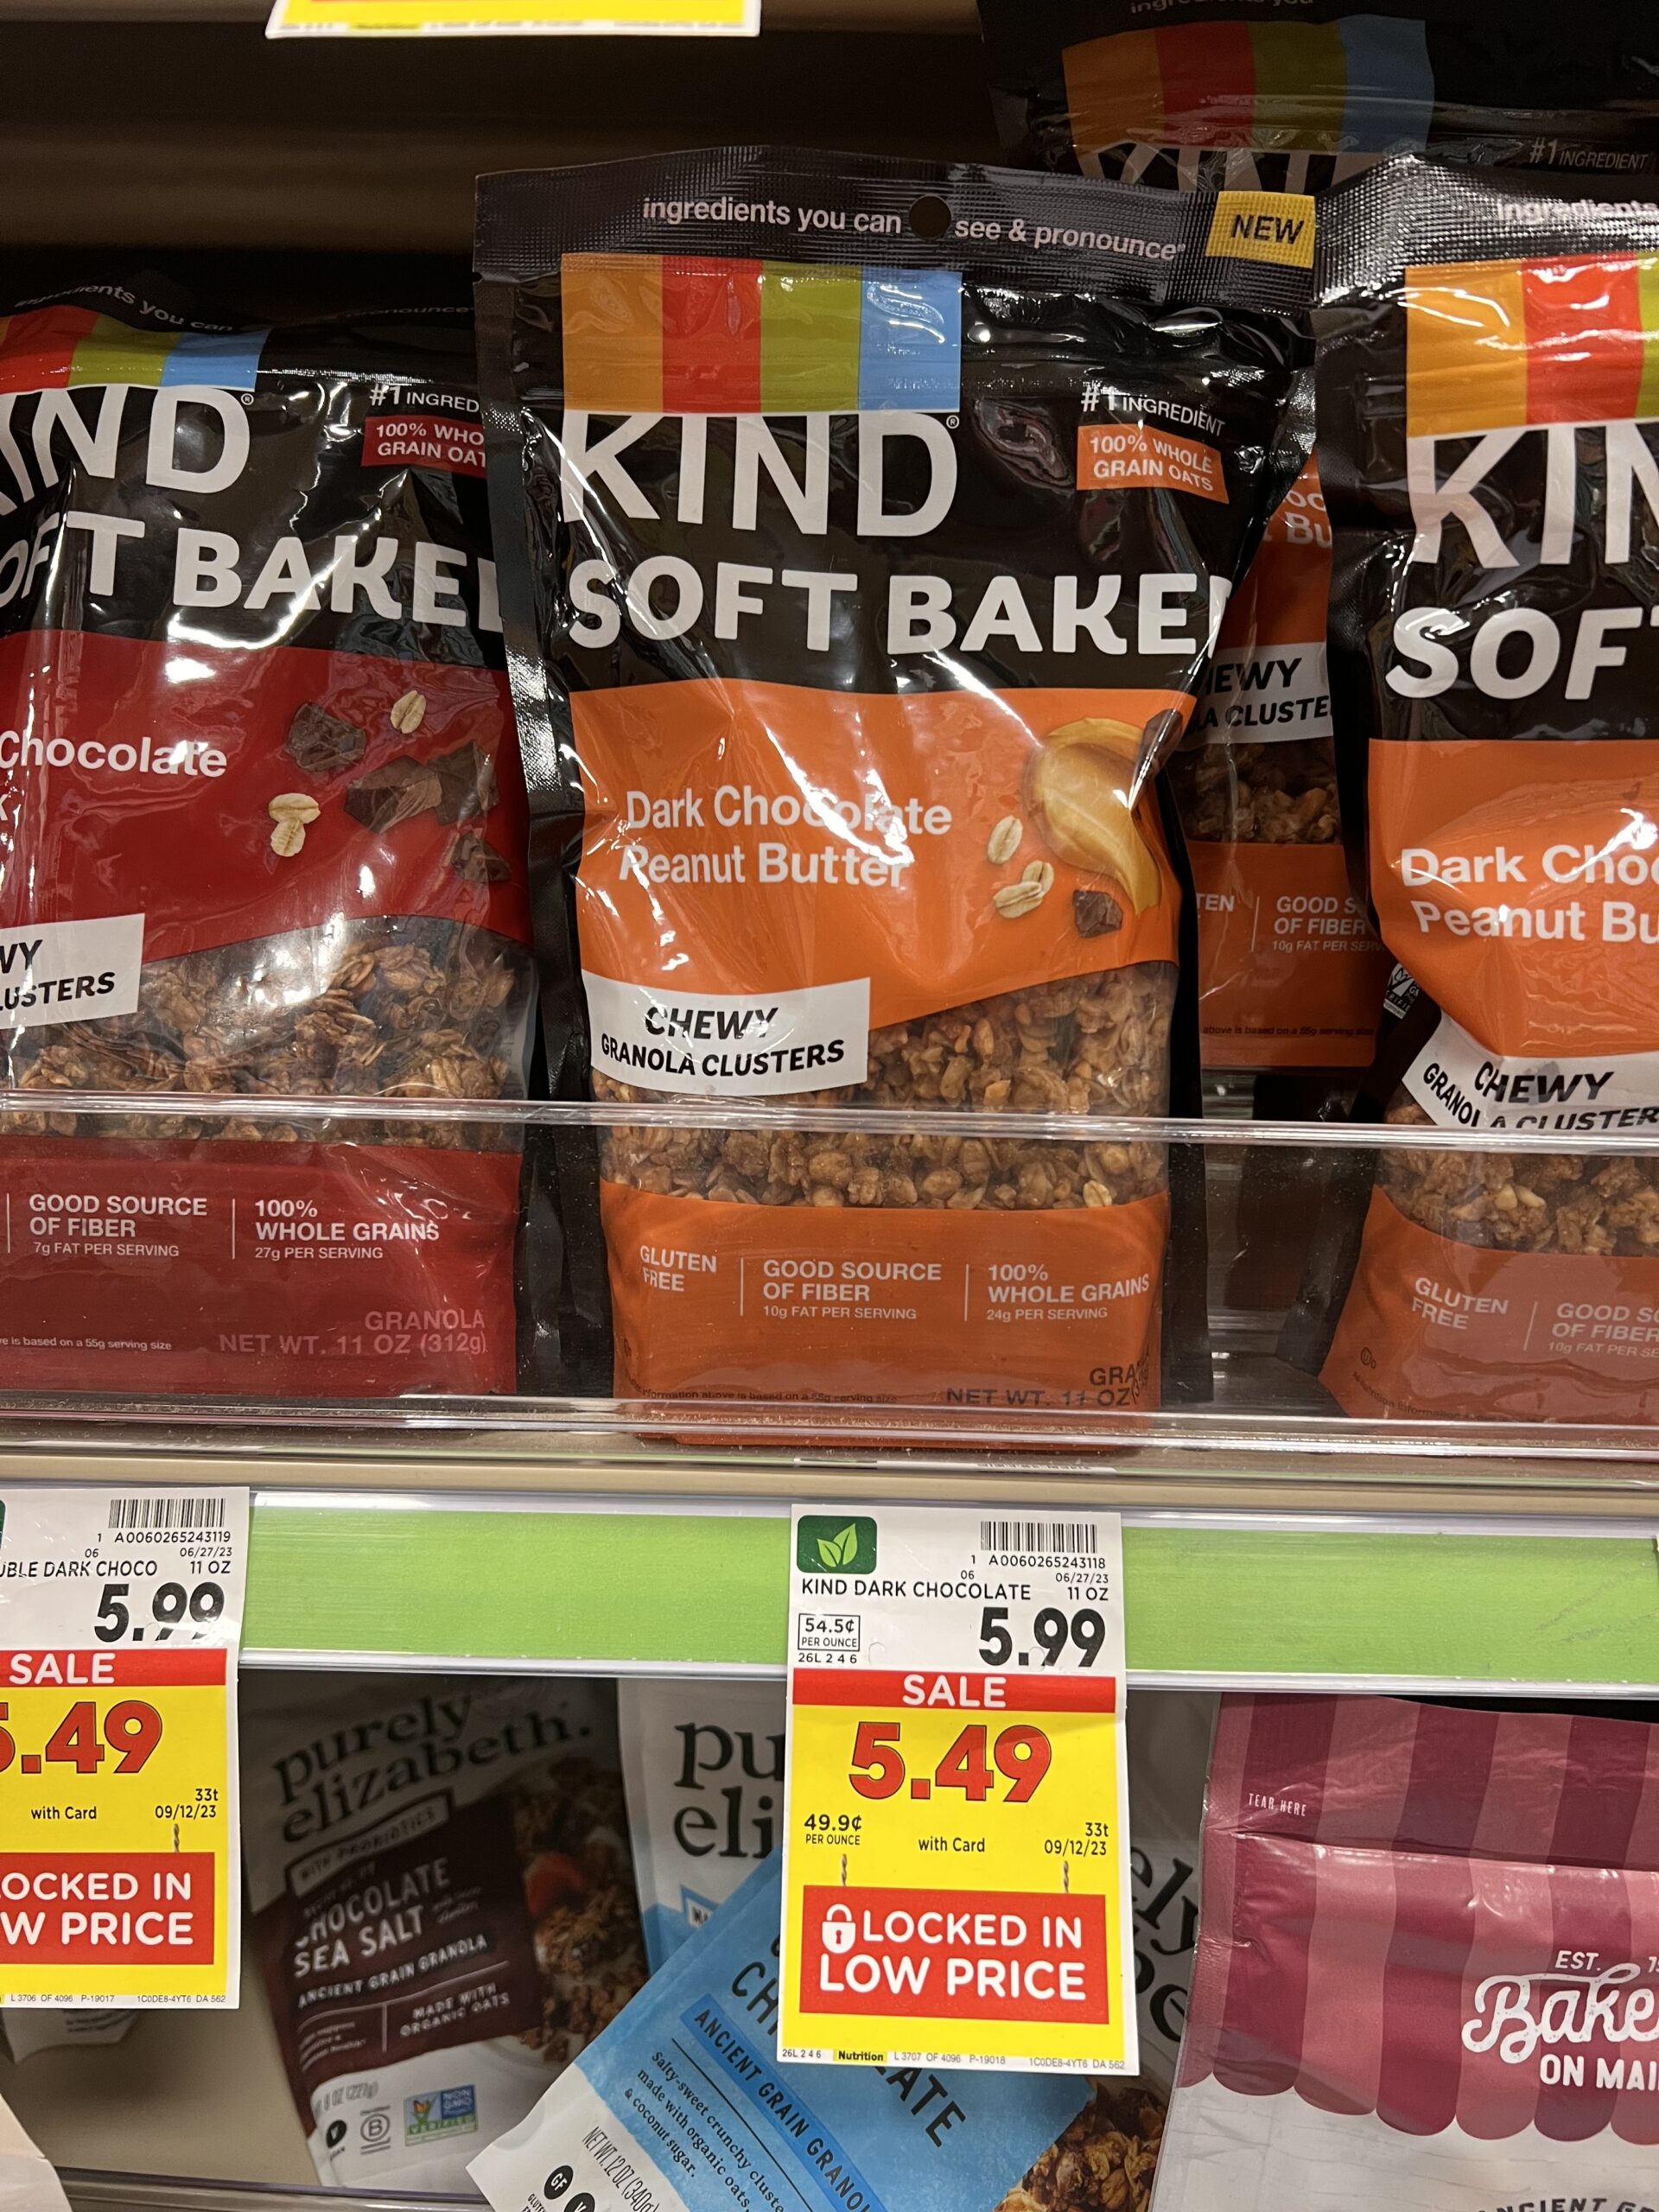 kind soft baked granola kroger shelf image 1